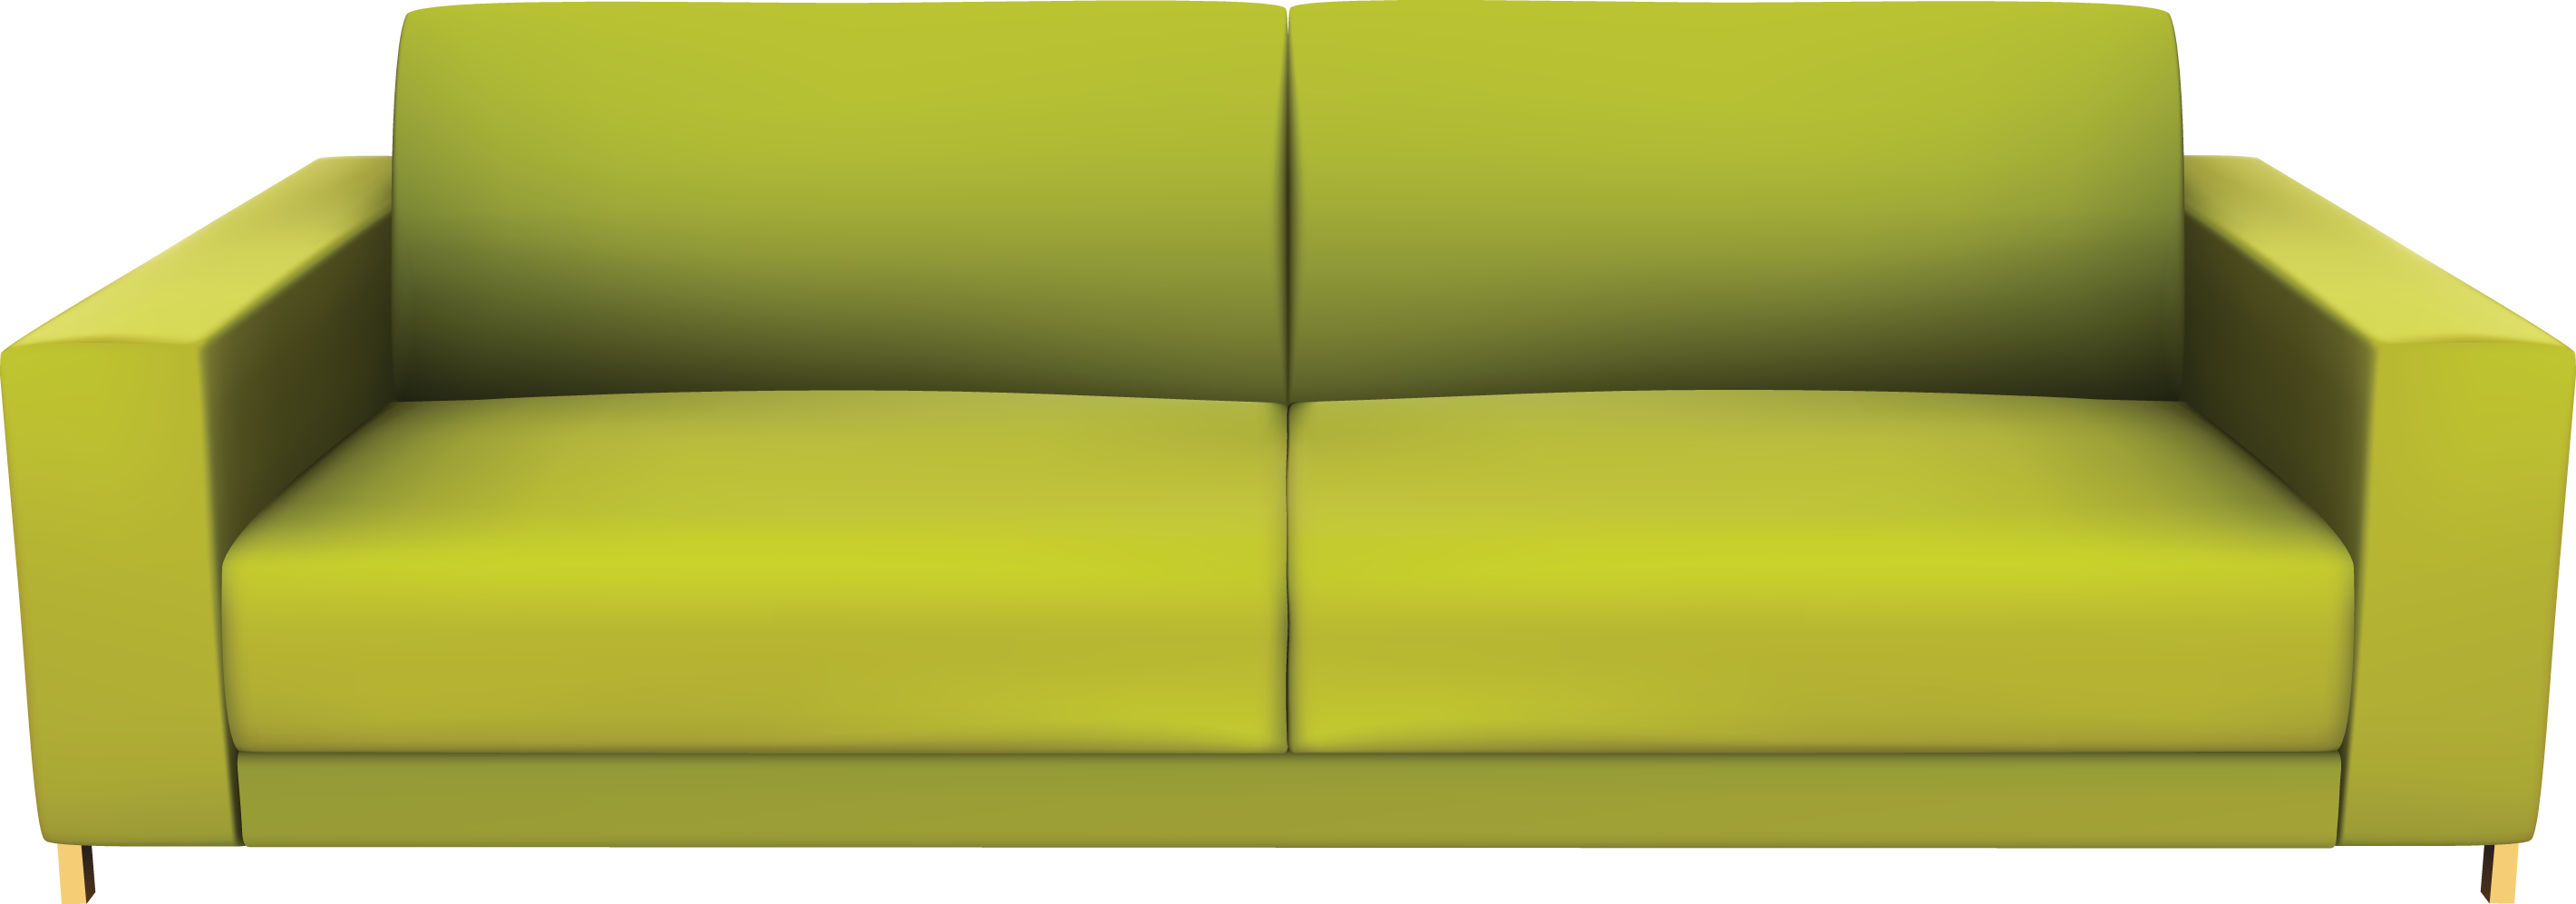 Green sofa PNG image